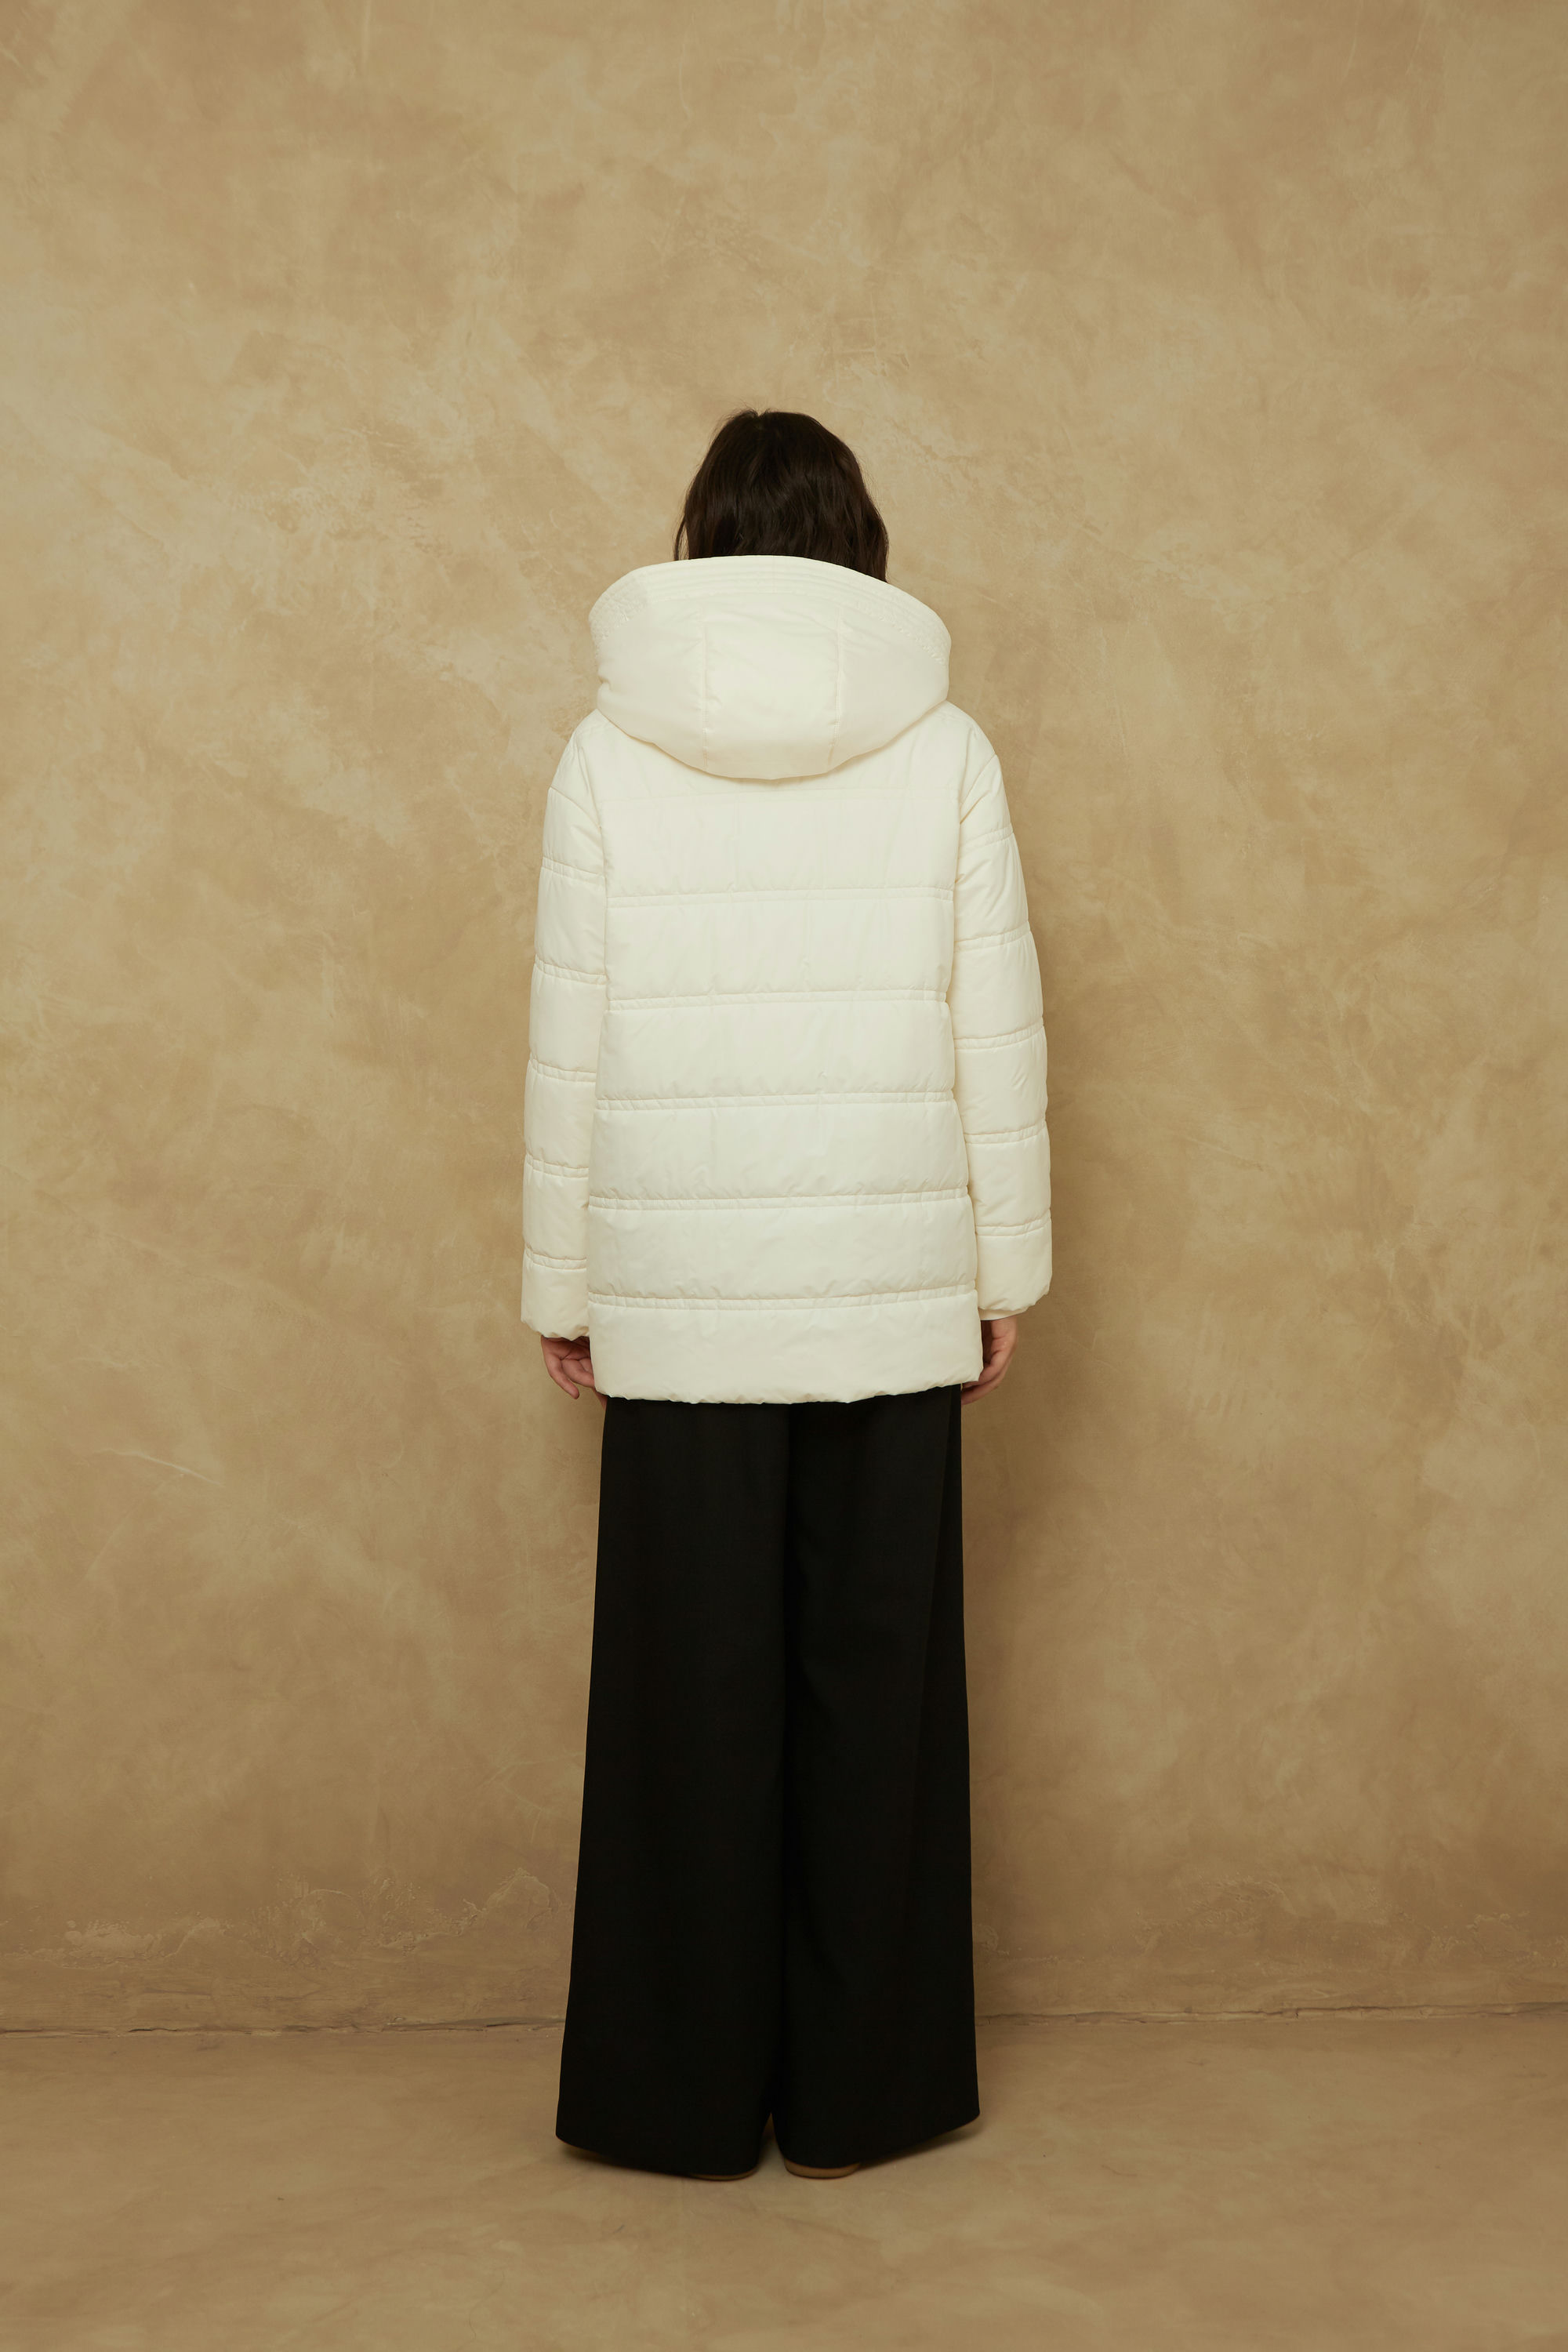 Куртка женская плащевая утепленная 4-155. Фото 4.